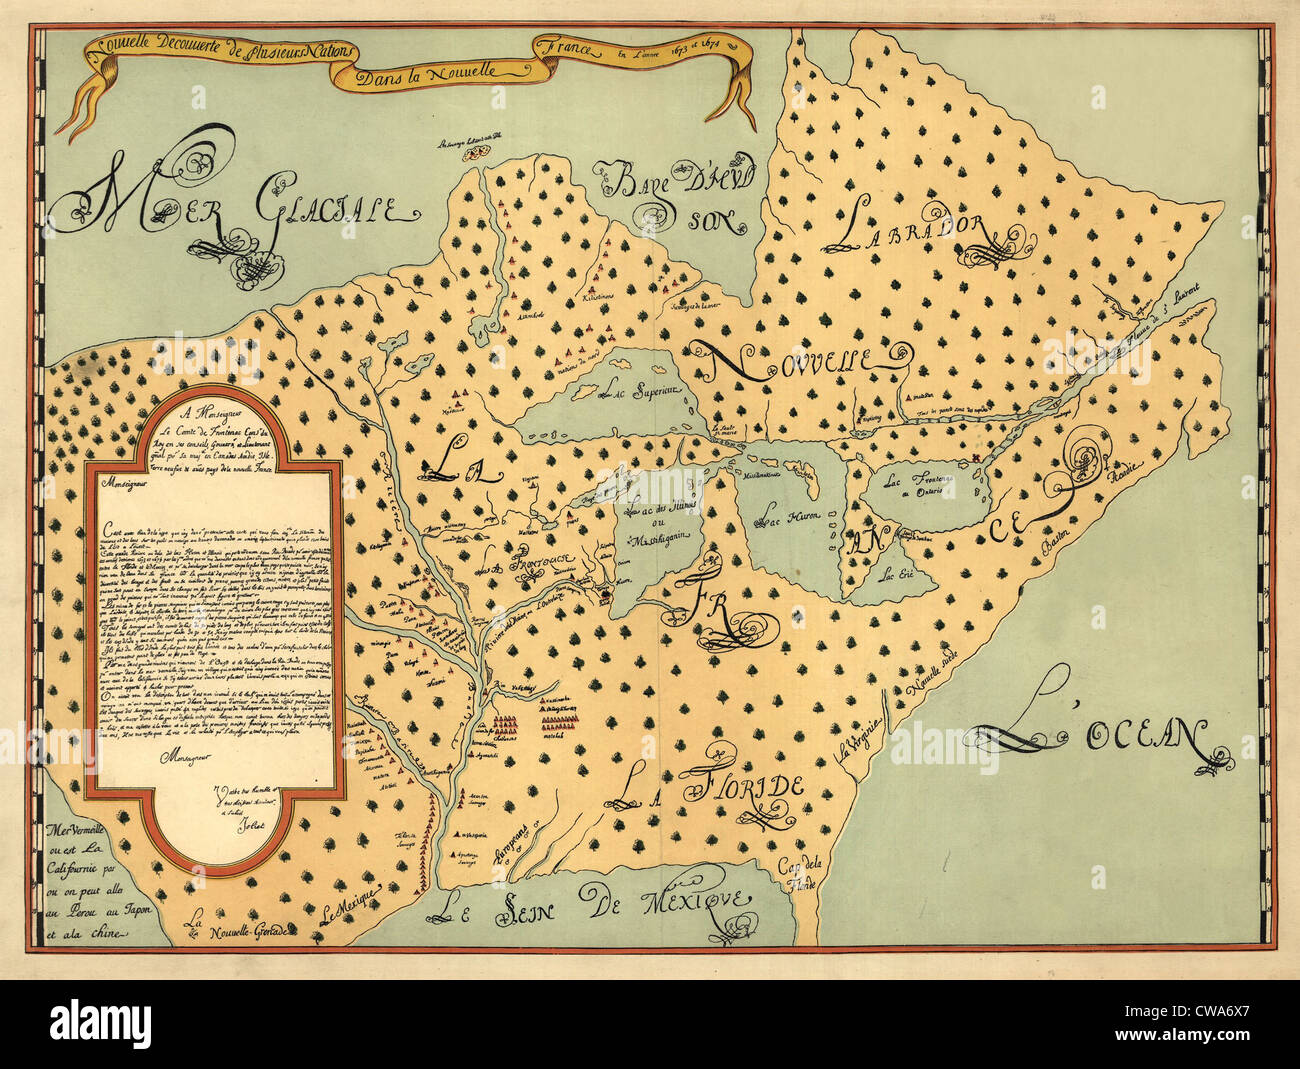 1674-Karte von Nordamerika von Louis Joliet zeigen die neuen Entdeckungen von Frankreich und anderen europäischen Ländern.  Karte enthält Native Stockfoto